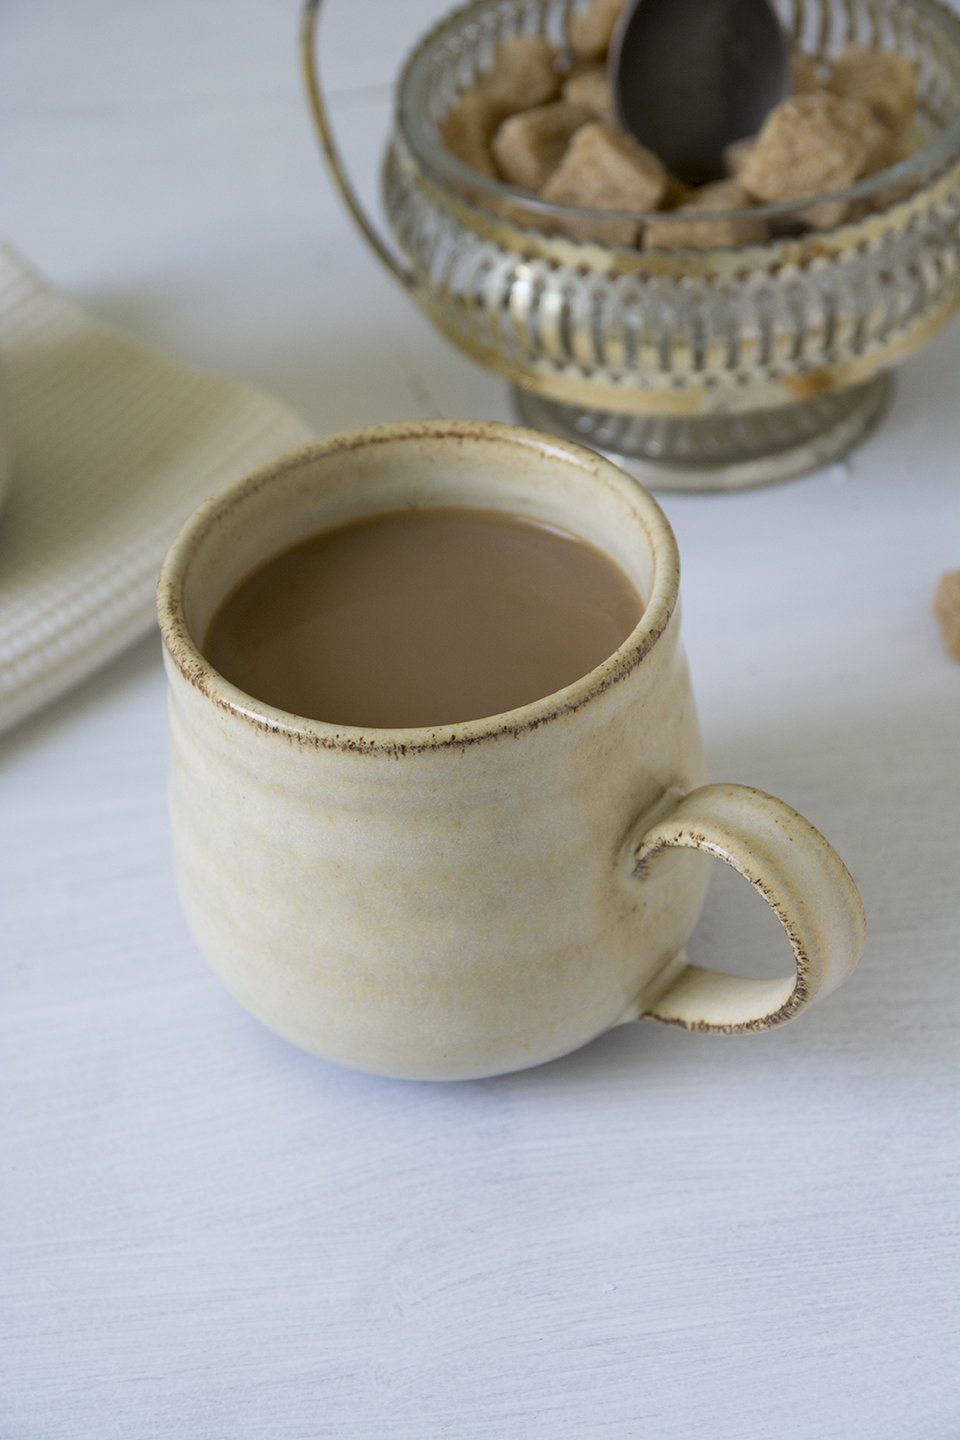 Yellow Hay Coffee Mug - Mad About Pottery - Mug